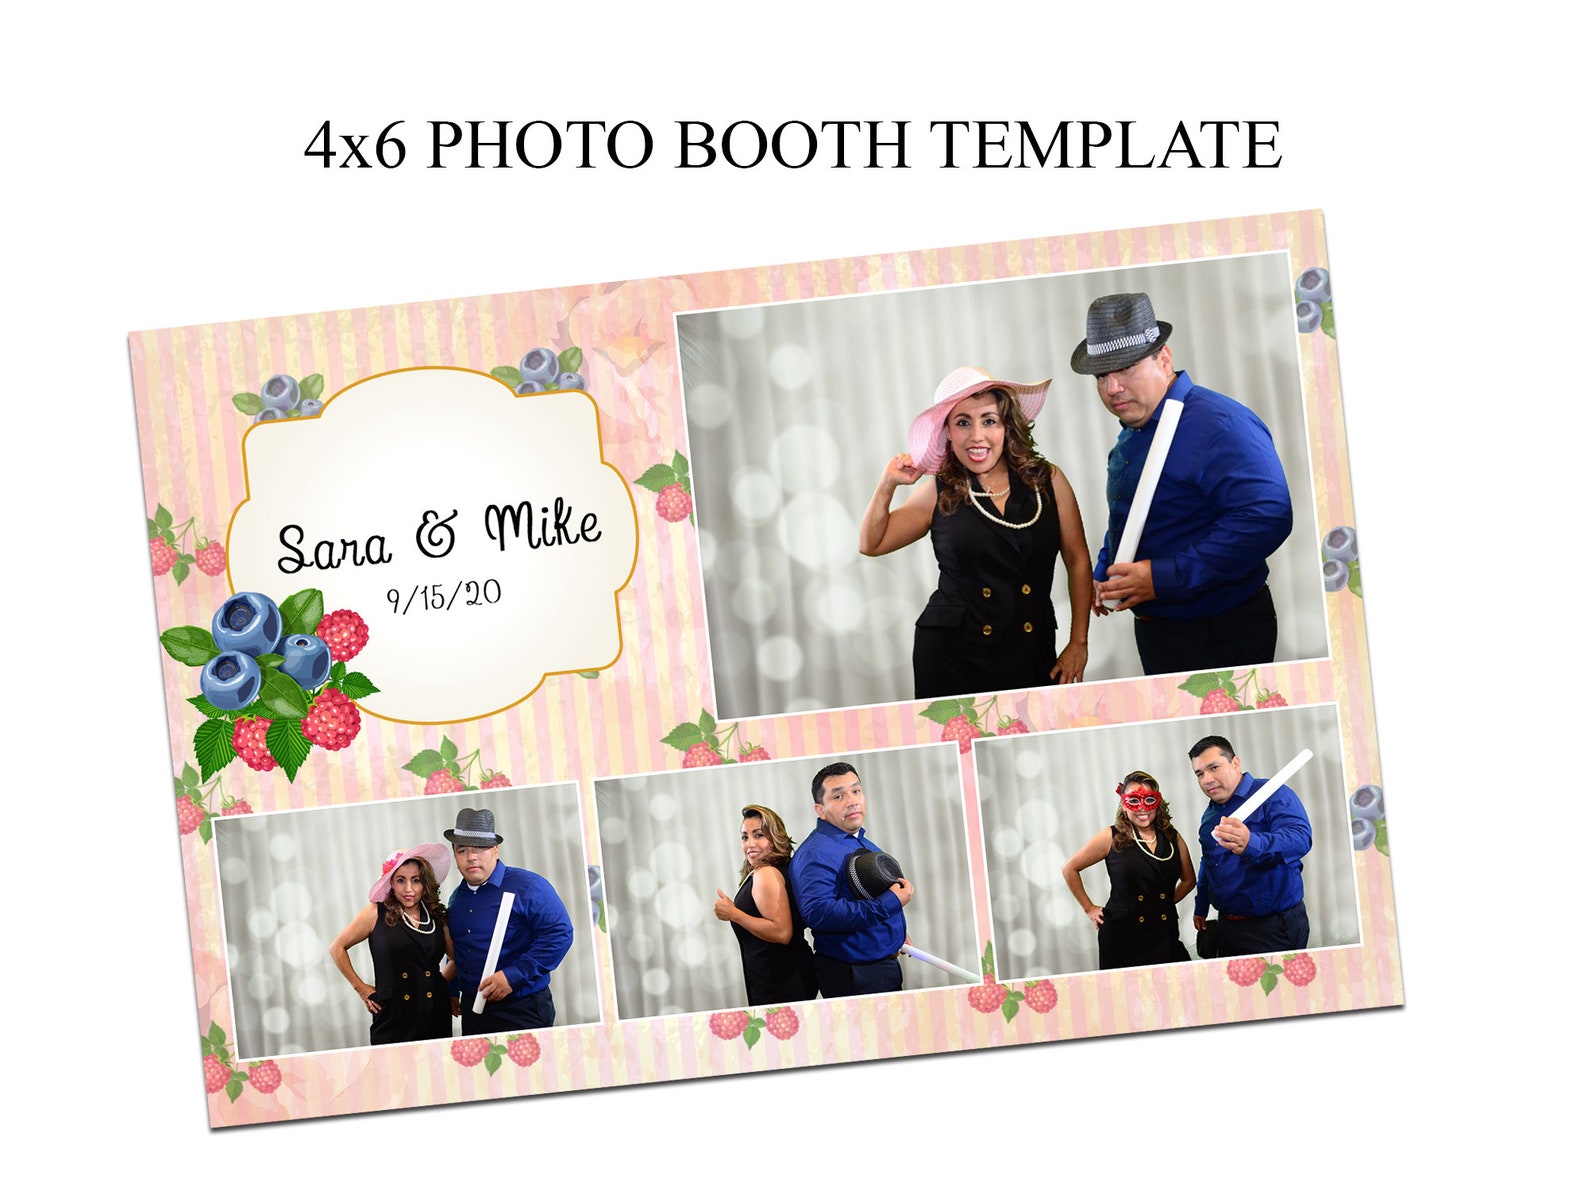 photo-booth-template-4x6-photo-booth-template-wedding-photo-etsy